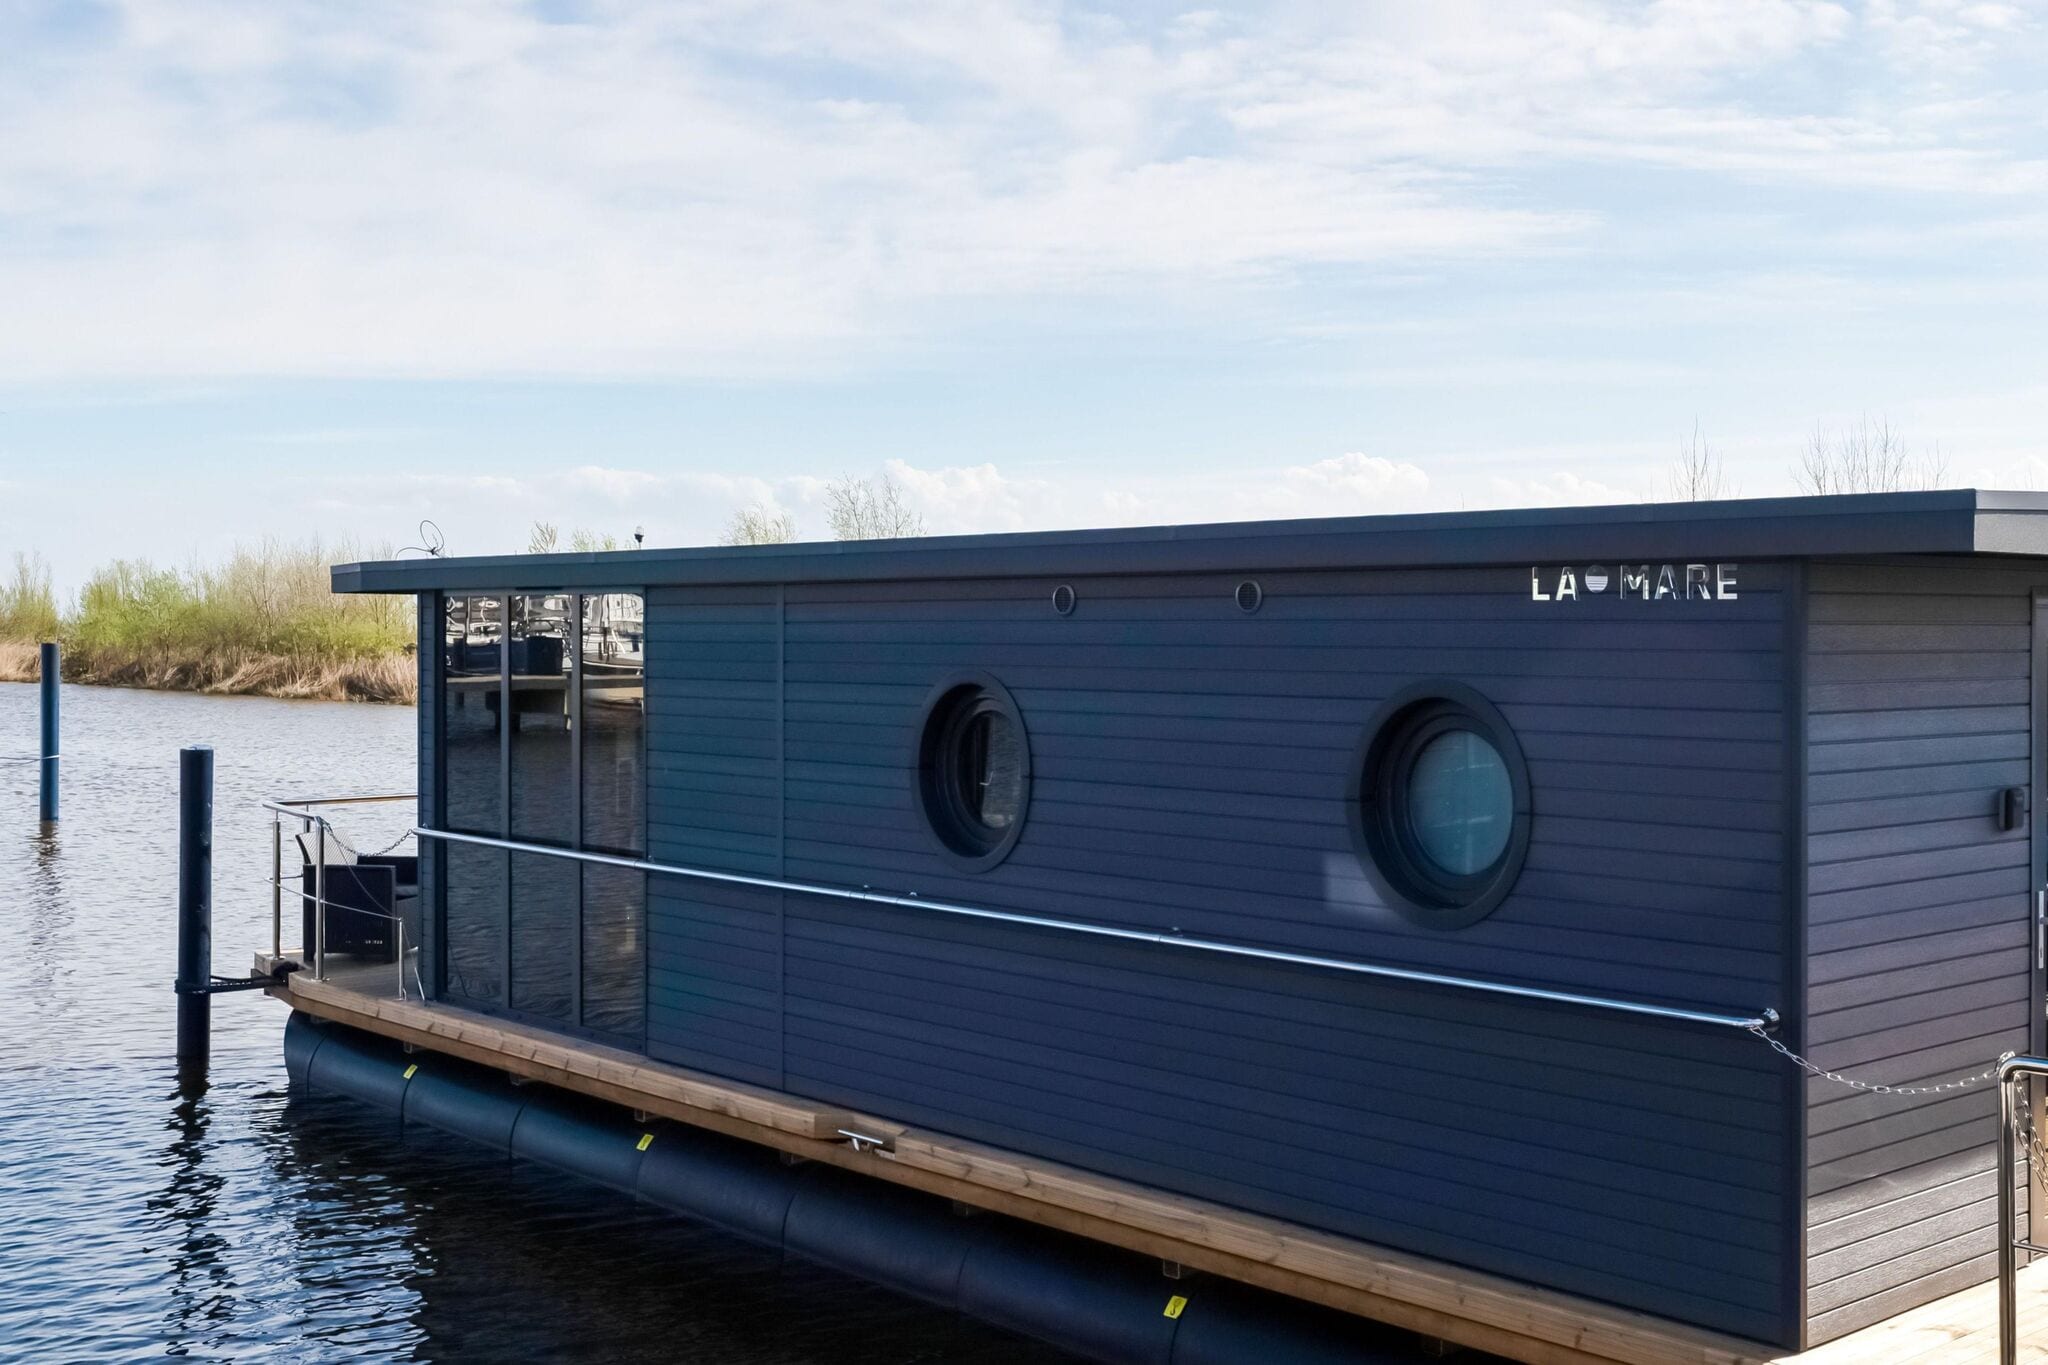 Moderne woonboot in het jachthaven van Volendam